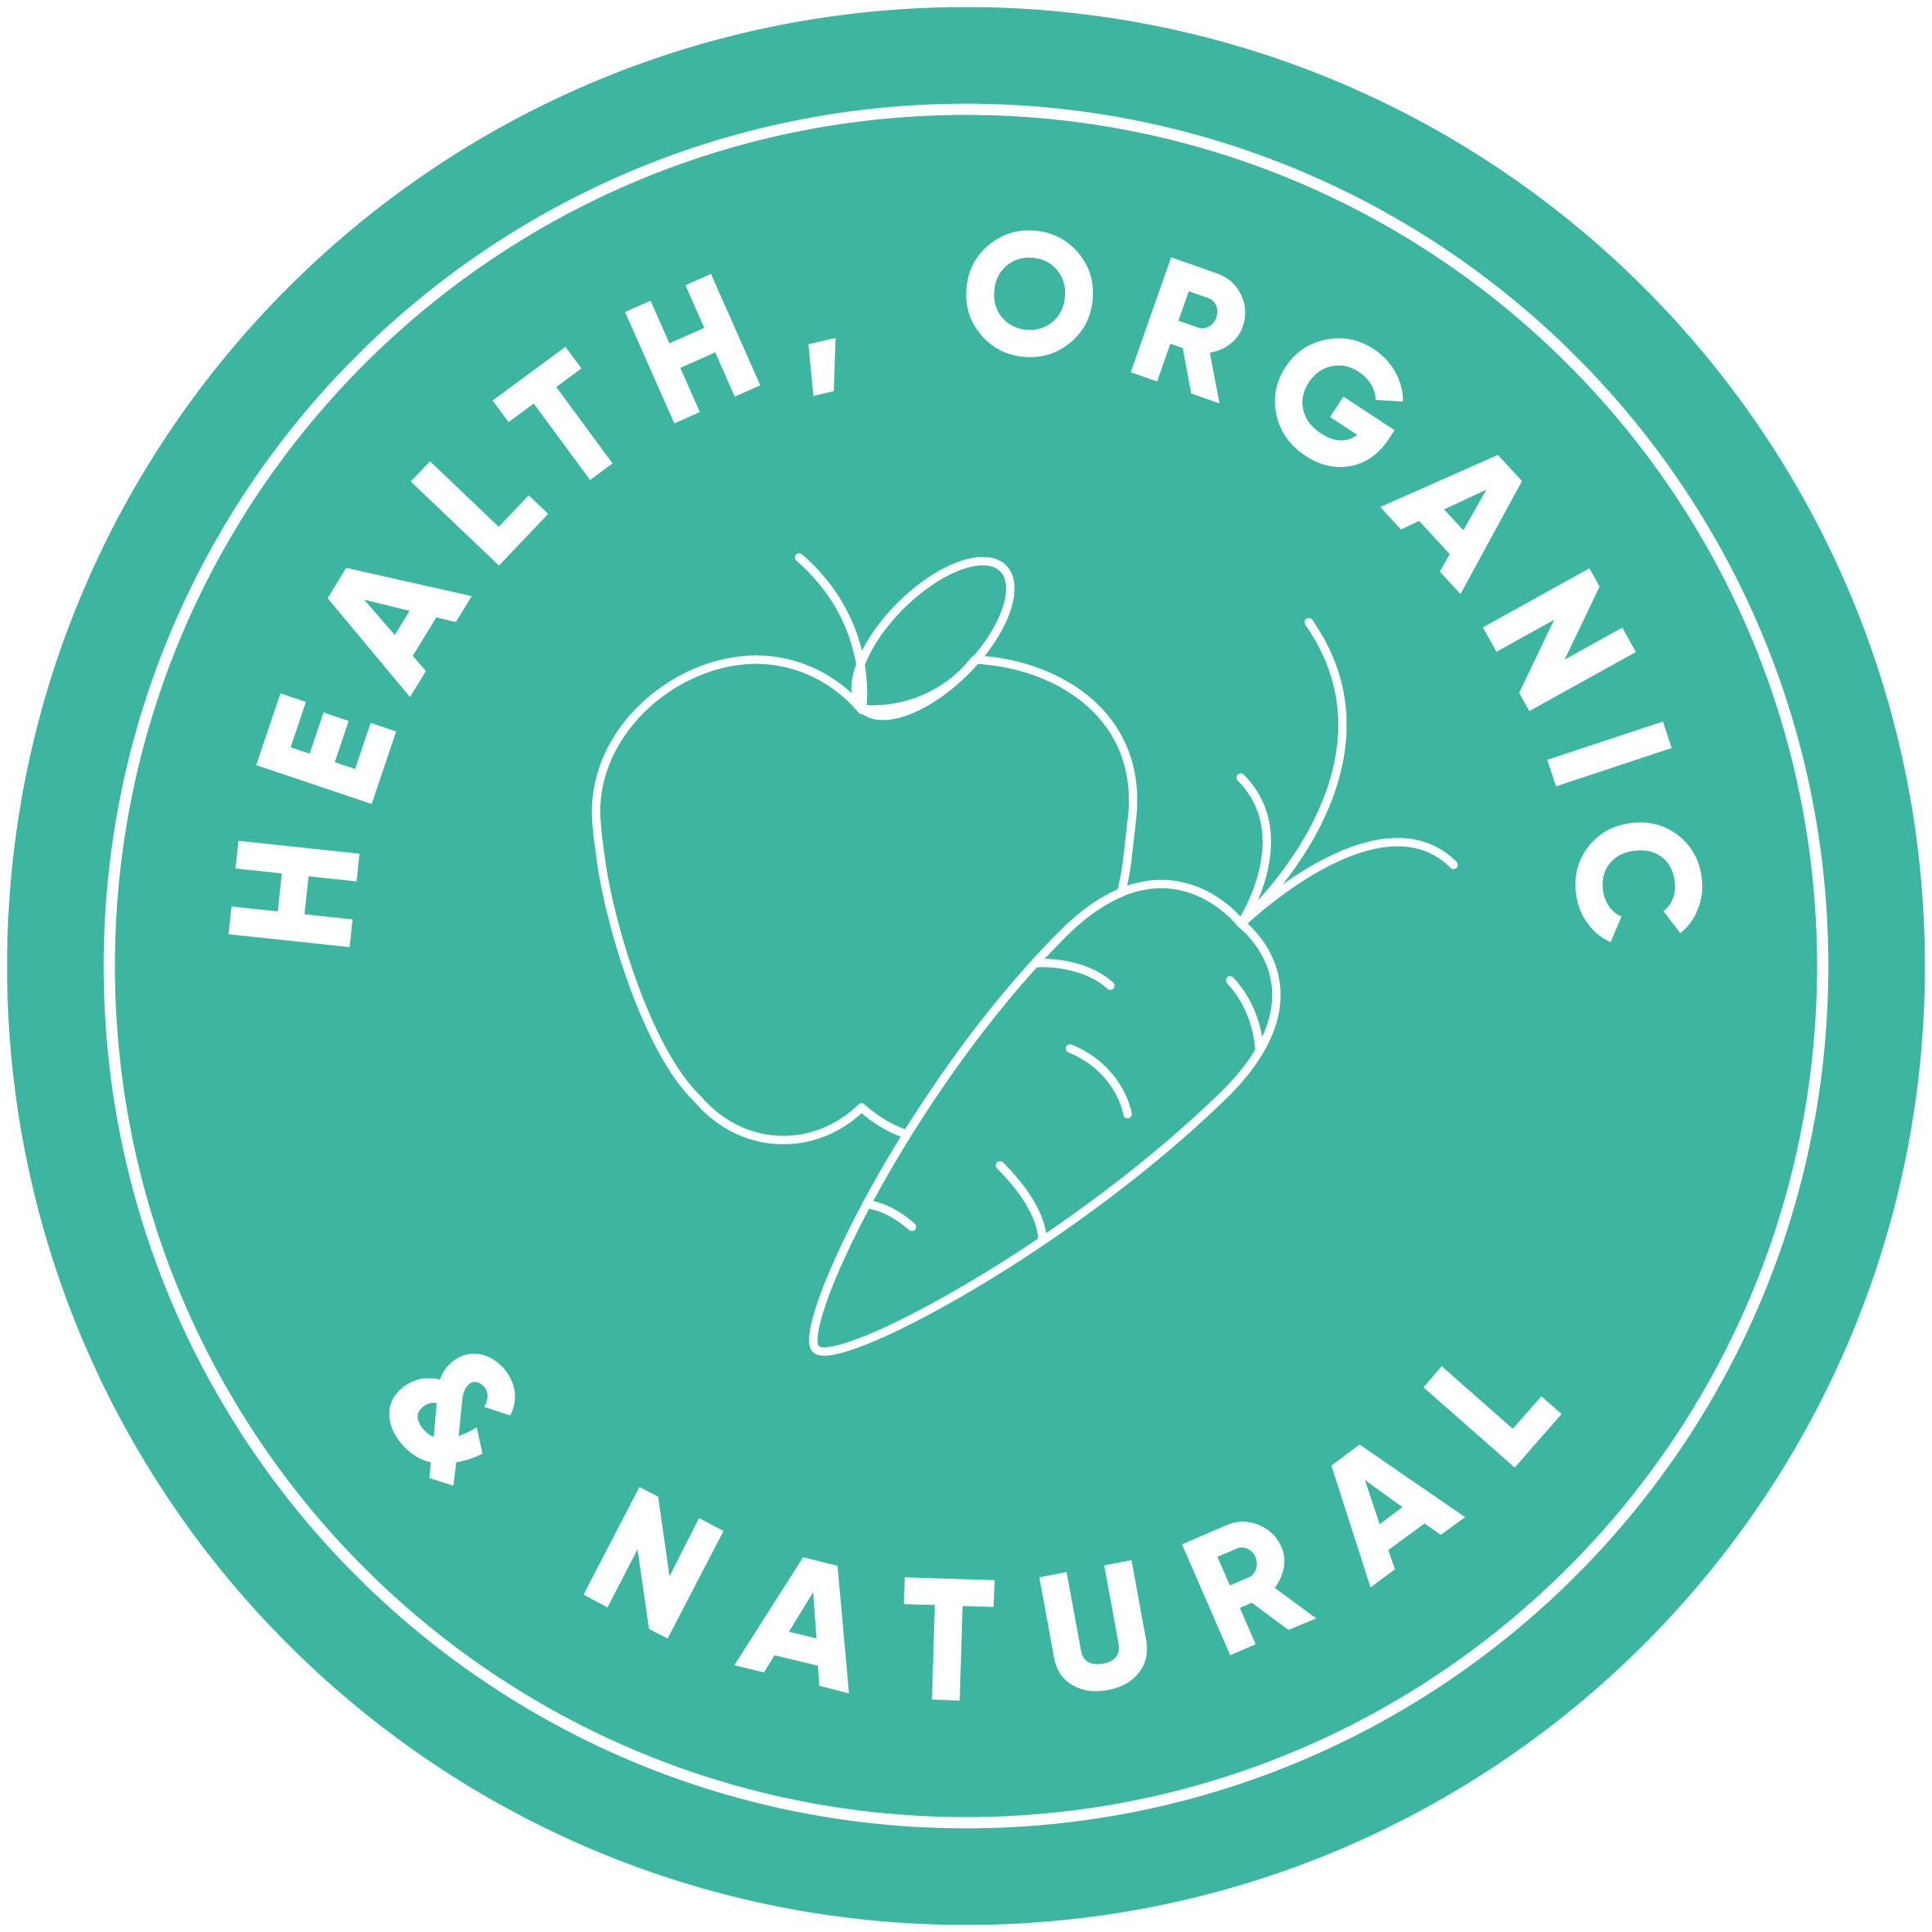 Health, organic and natural